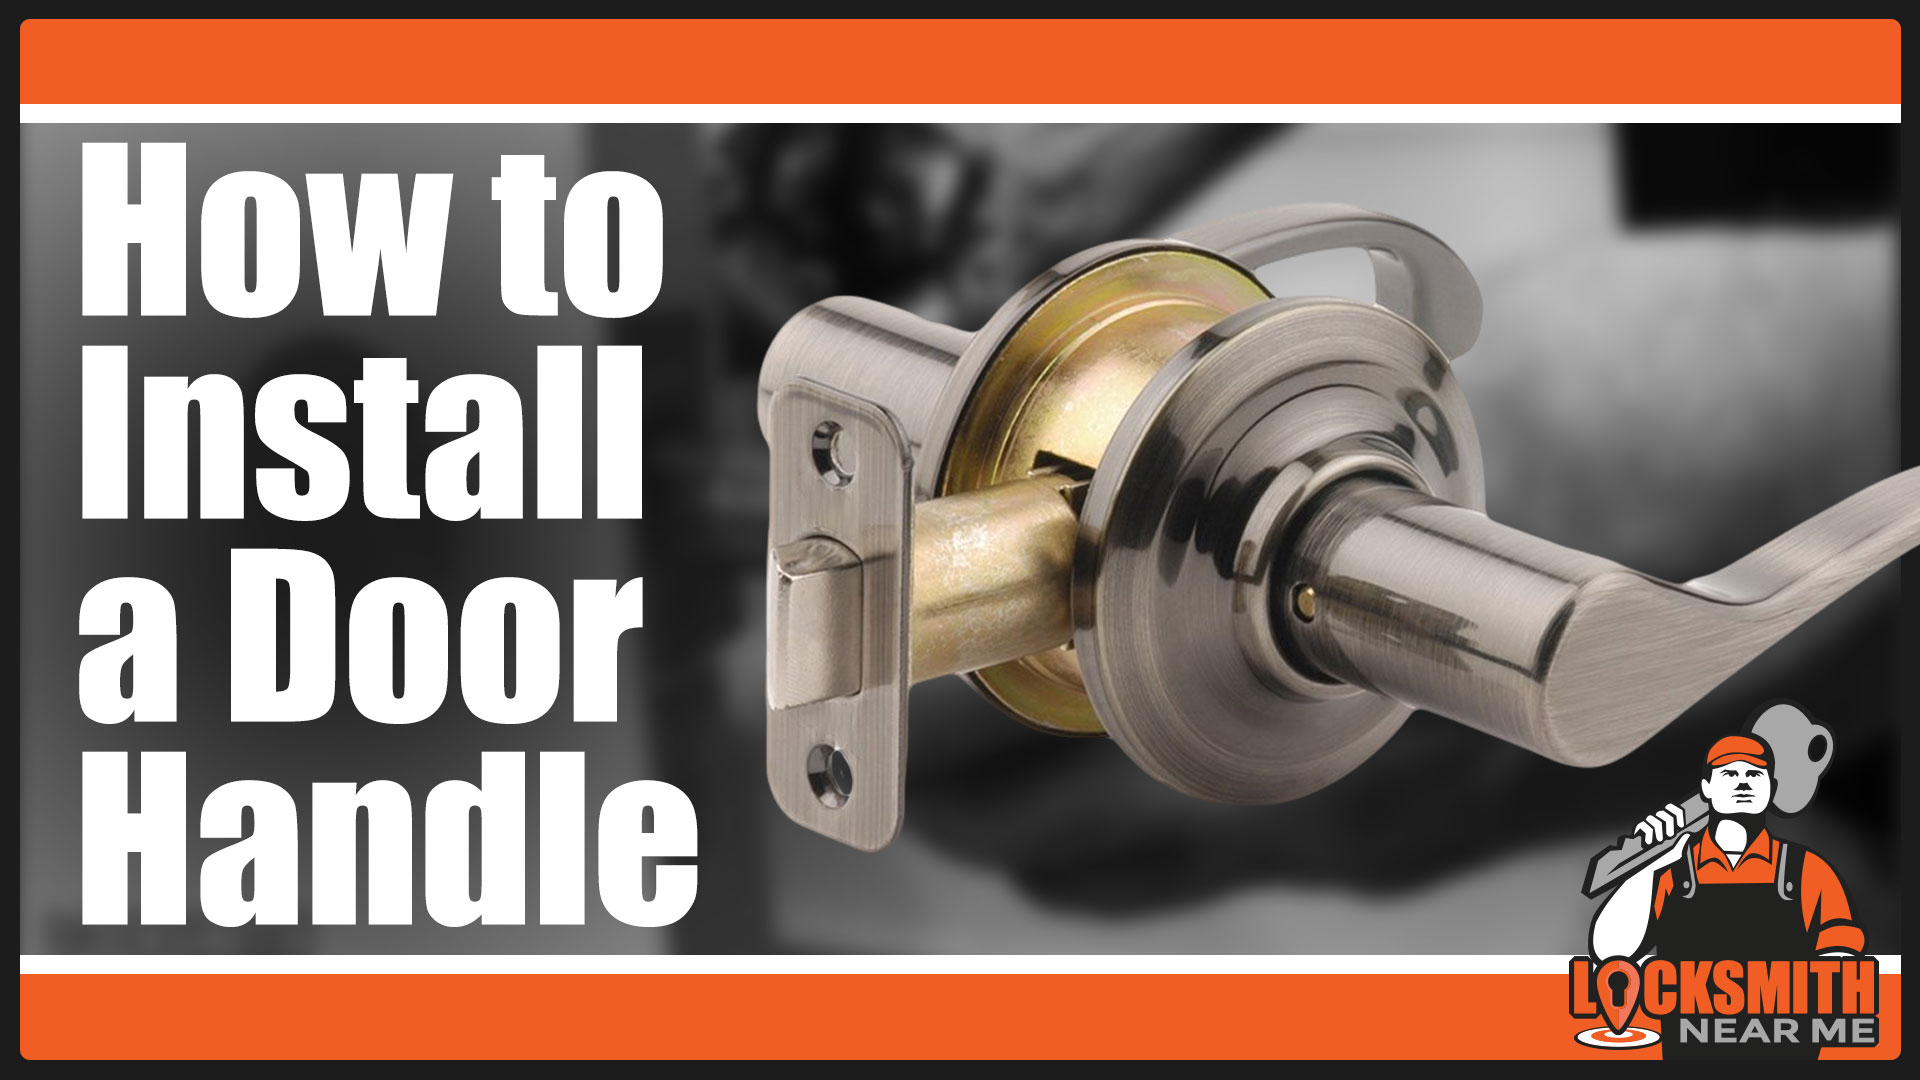 How to install a door lever handle